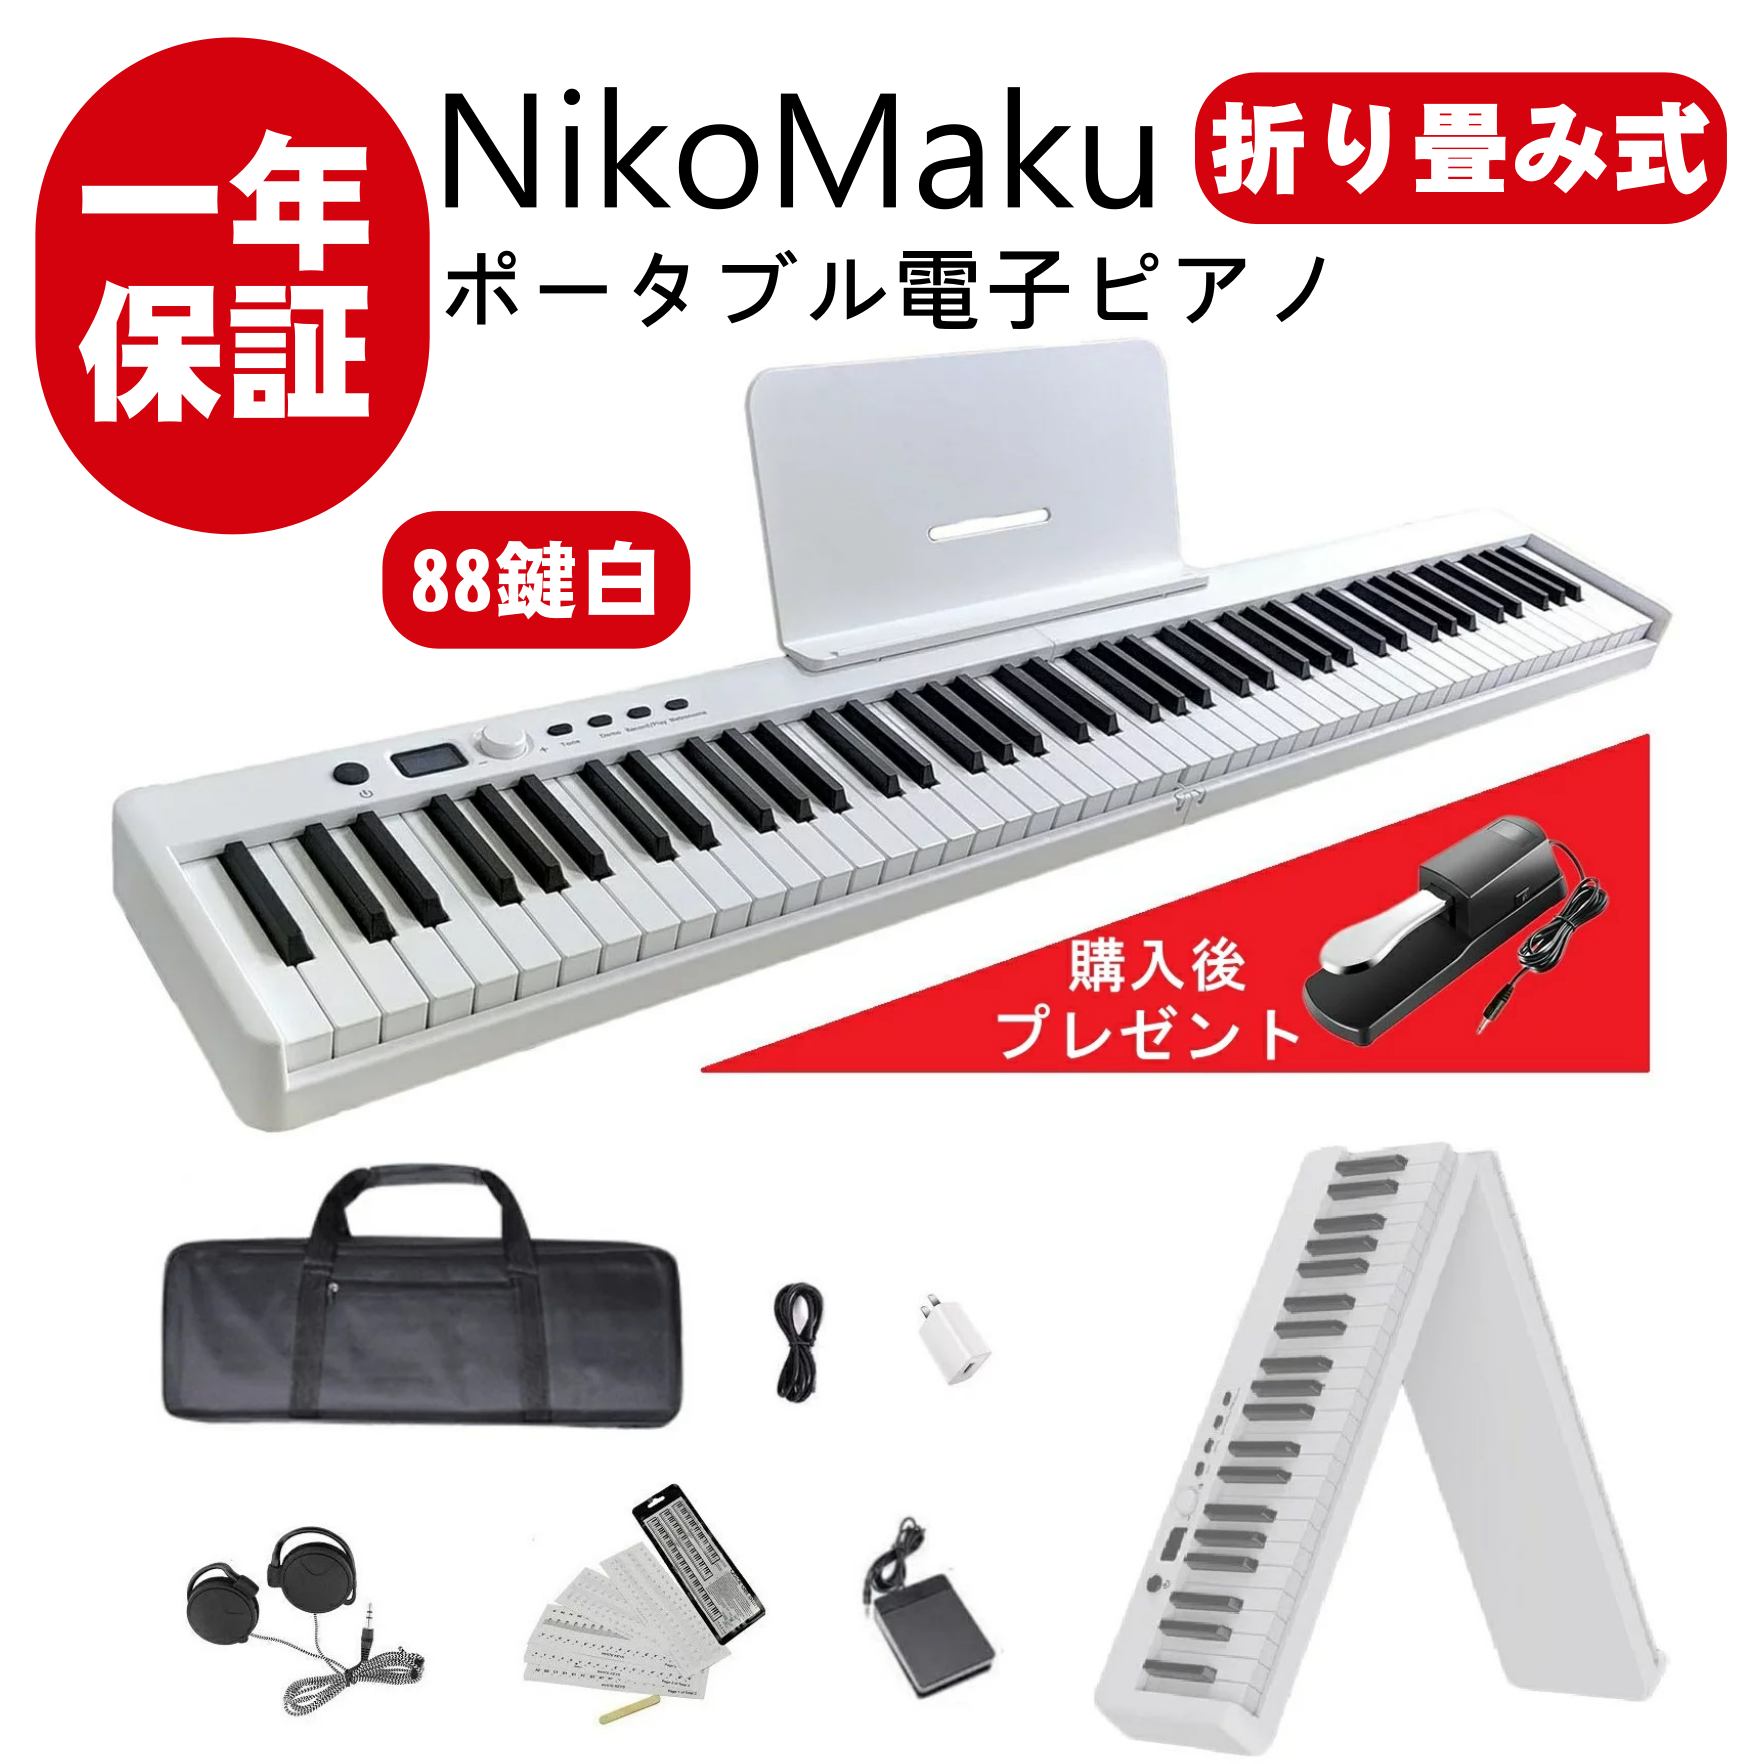 電子ピアノ 88鍵盤 NikoMaku 折り畳み式電子ピアノ SWAN-X 4キロ コンパクト 軽量 小型 MIDI対応 ソフトケース付き  ペダル付き 10ｍｍストローク バッテリ内蔵 長時間利用可能 スリムボディ 練習にピッタリ 譜面台 鍵盤シール 練習用イヤホン 白  HopeStarショップ